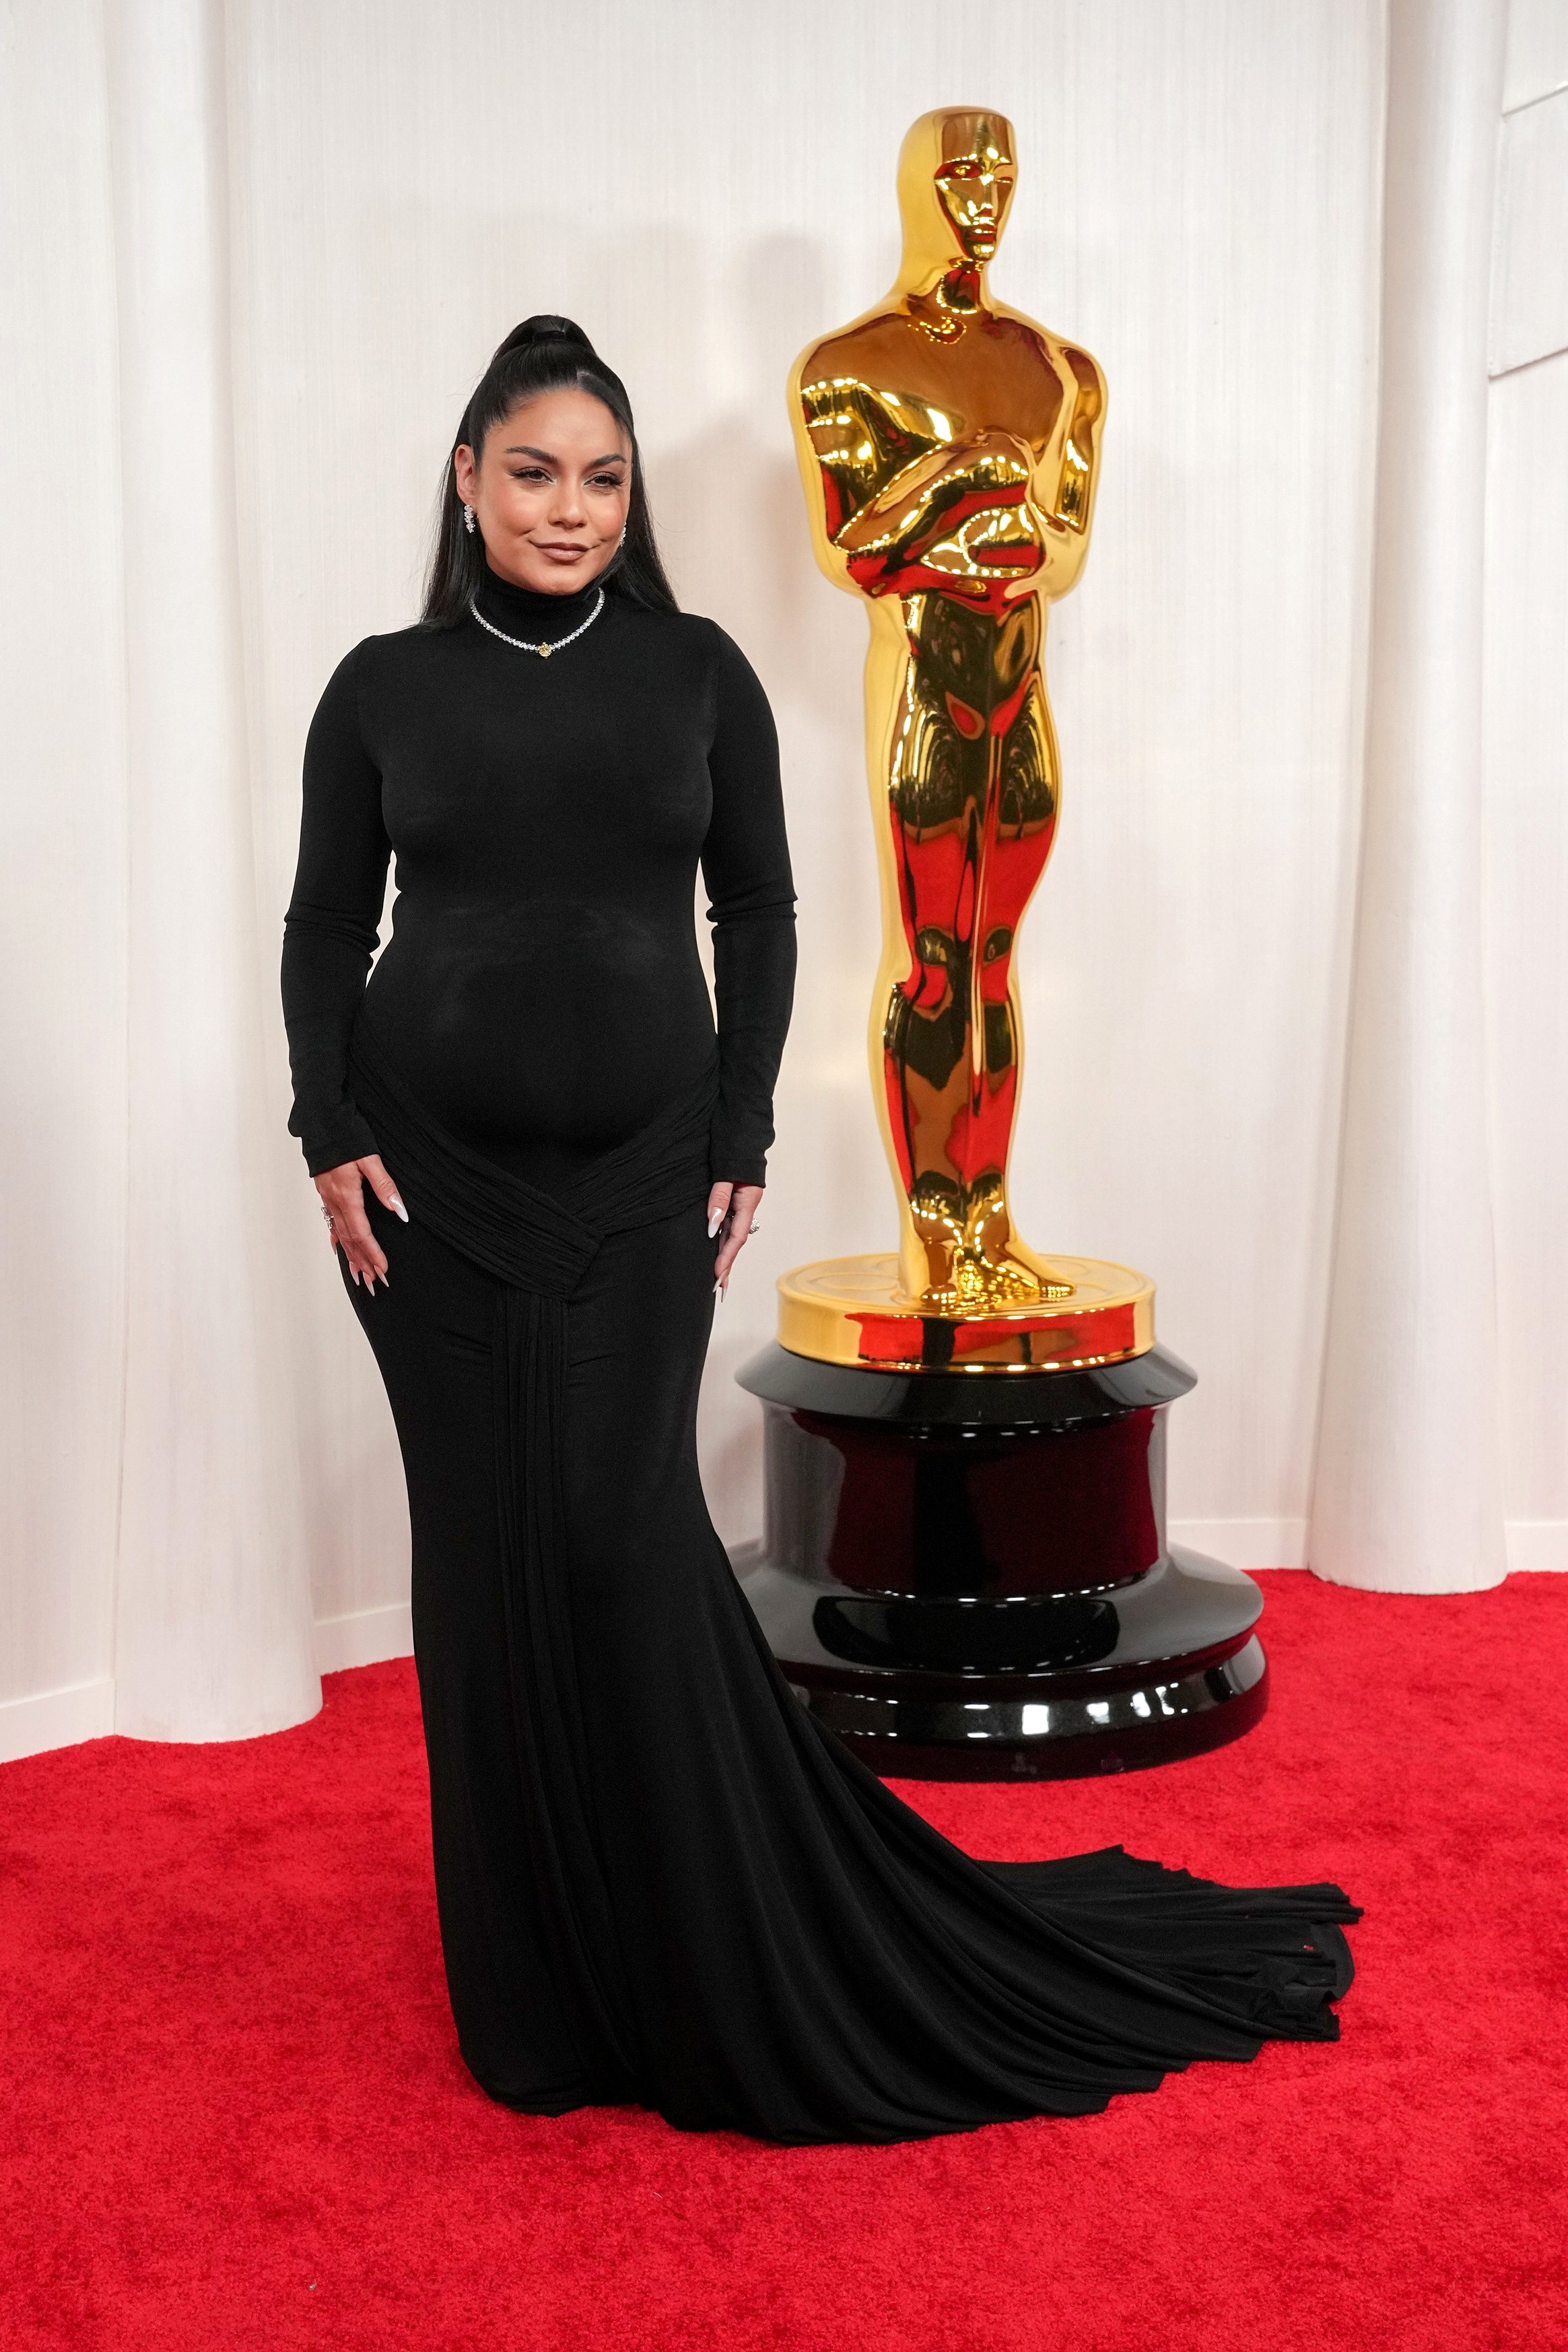 Έγκυος η Vanessa Hudgens! Η ηθοποιός εμφανίστηκε με φουσκωμένη κοιλίτσα στο κόκκινο χαλί των Oscar